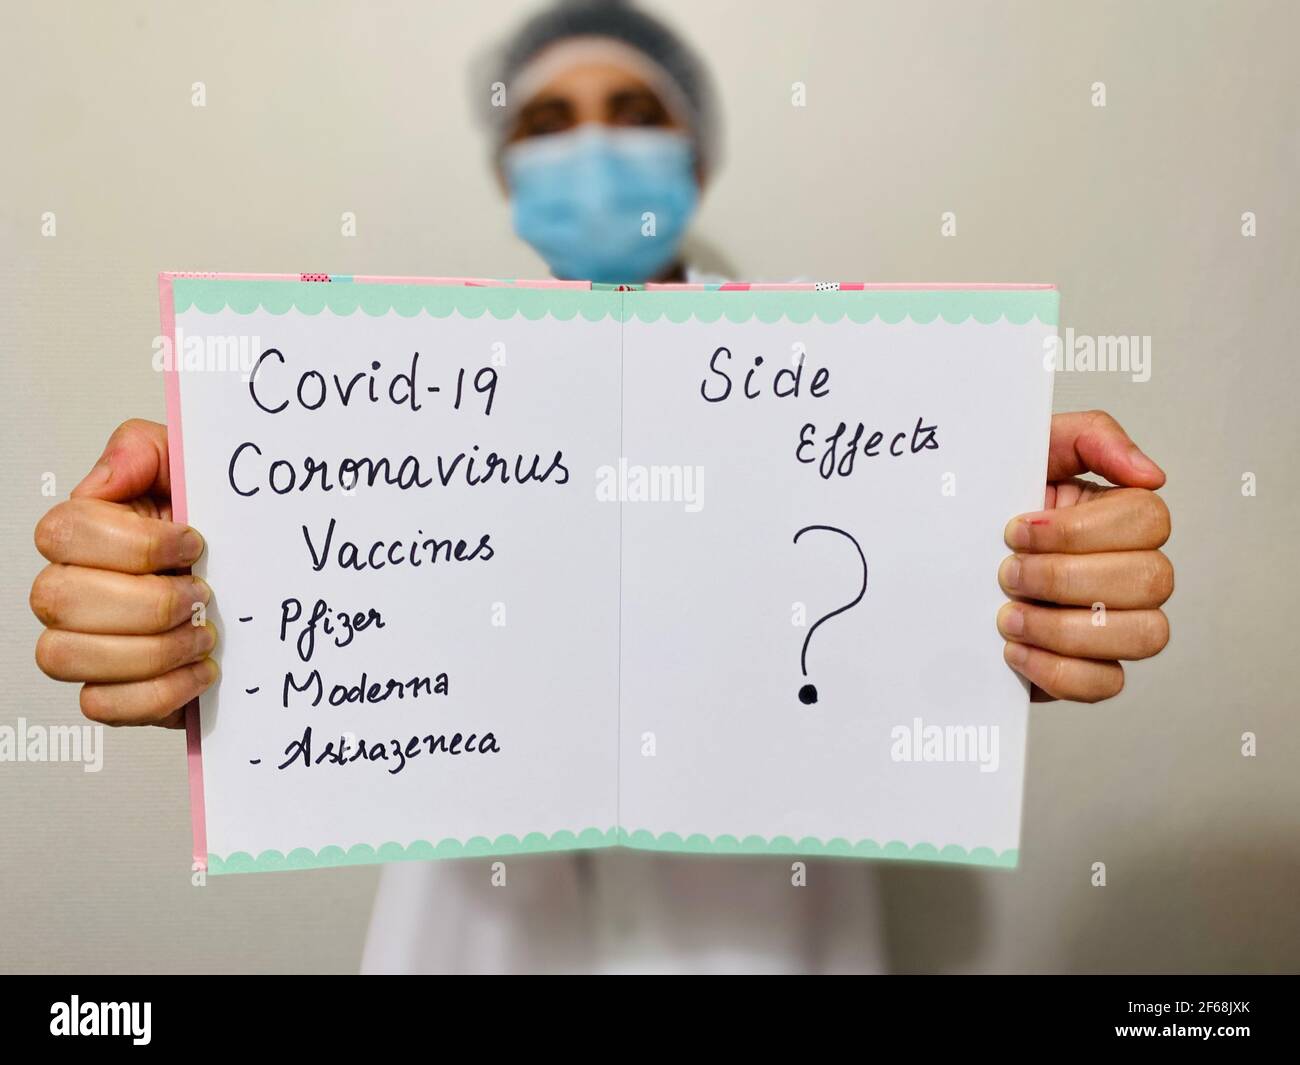 Eine Ärztin hält ein Schild, das die Nebenwirkungen verschiedener Covid-19-Coronavirus-Impfstoffe (pfizer, moderna, astrazeneca) in Frage stellt. Medizin vs. Ethik. Stockfoto